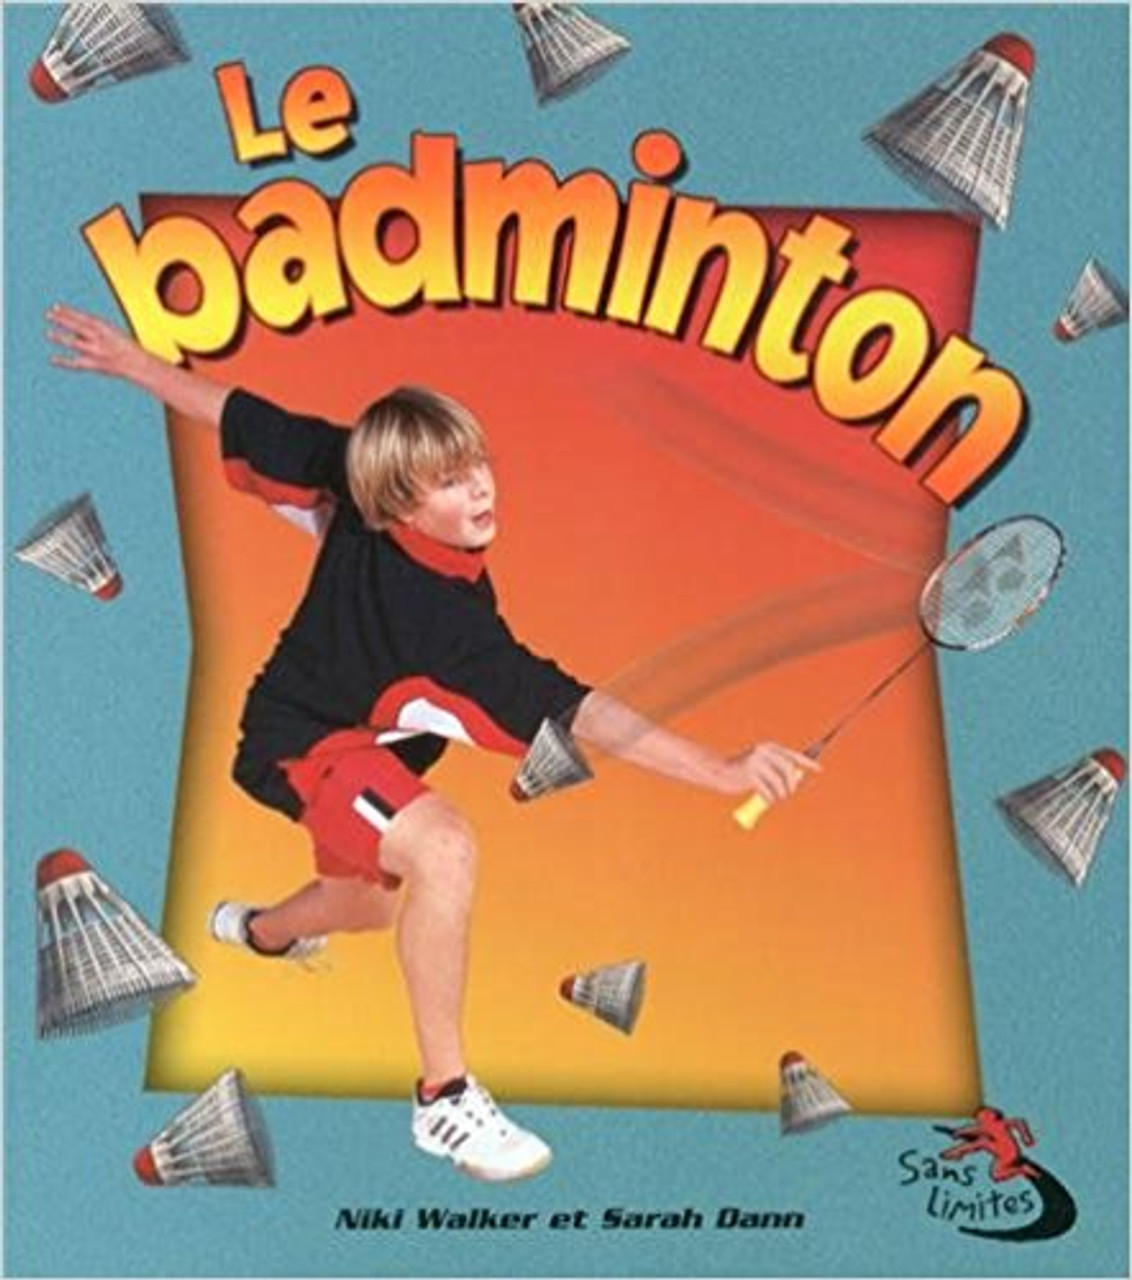 Le Badminton by Niki Walker